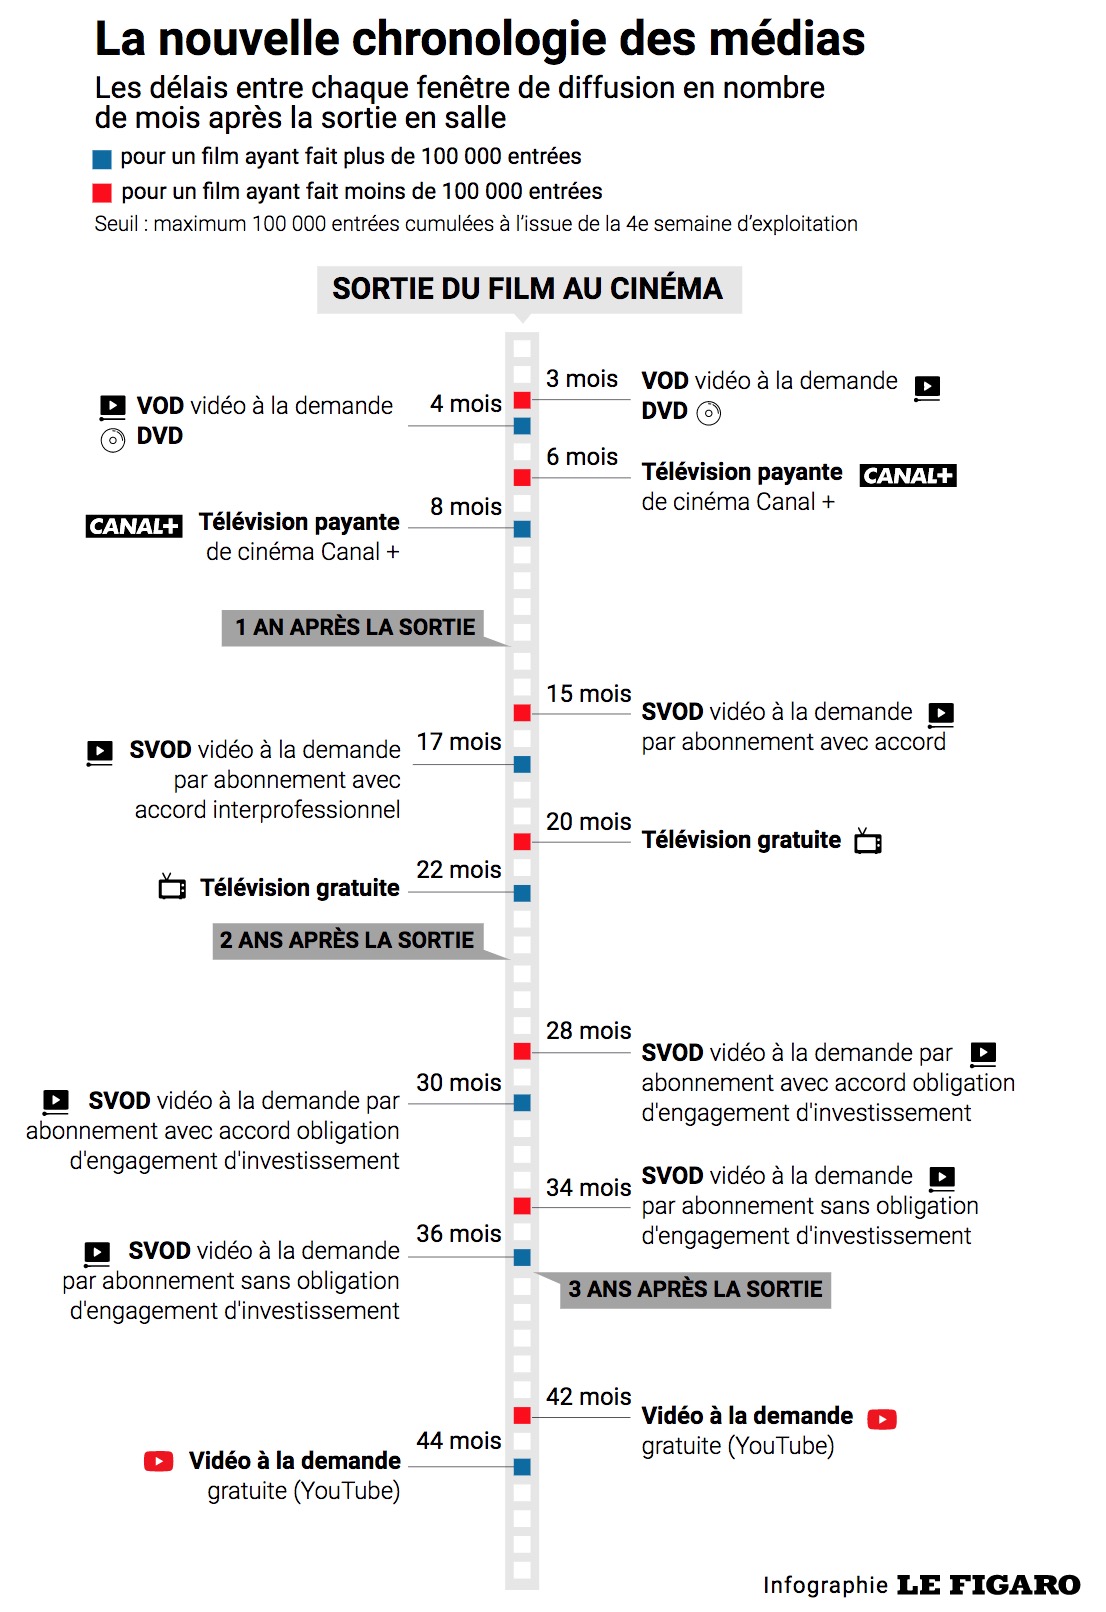 Infographie représentant la durée qu'il faut à un film pour sortir du cinéma